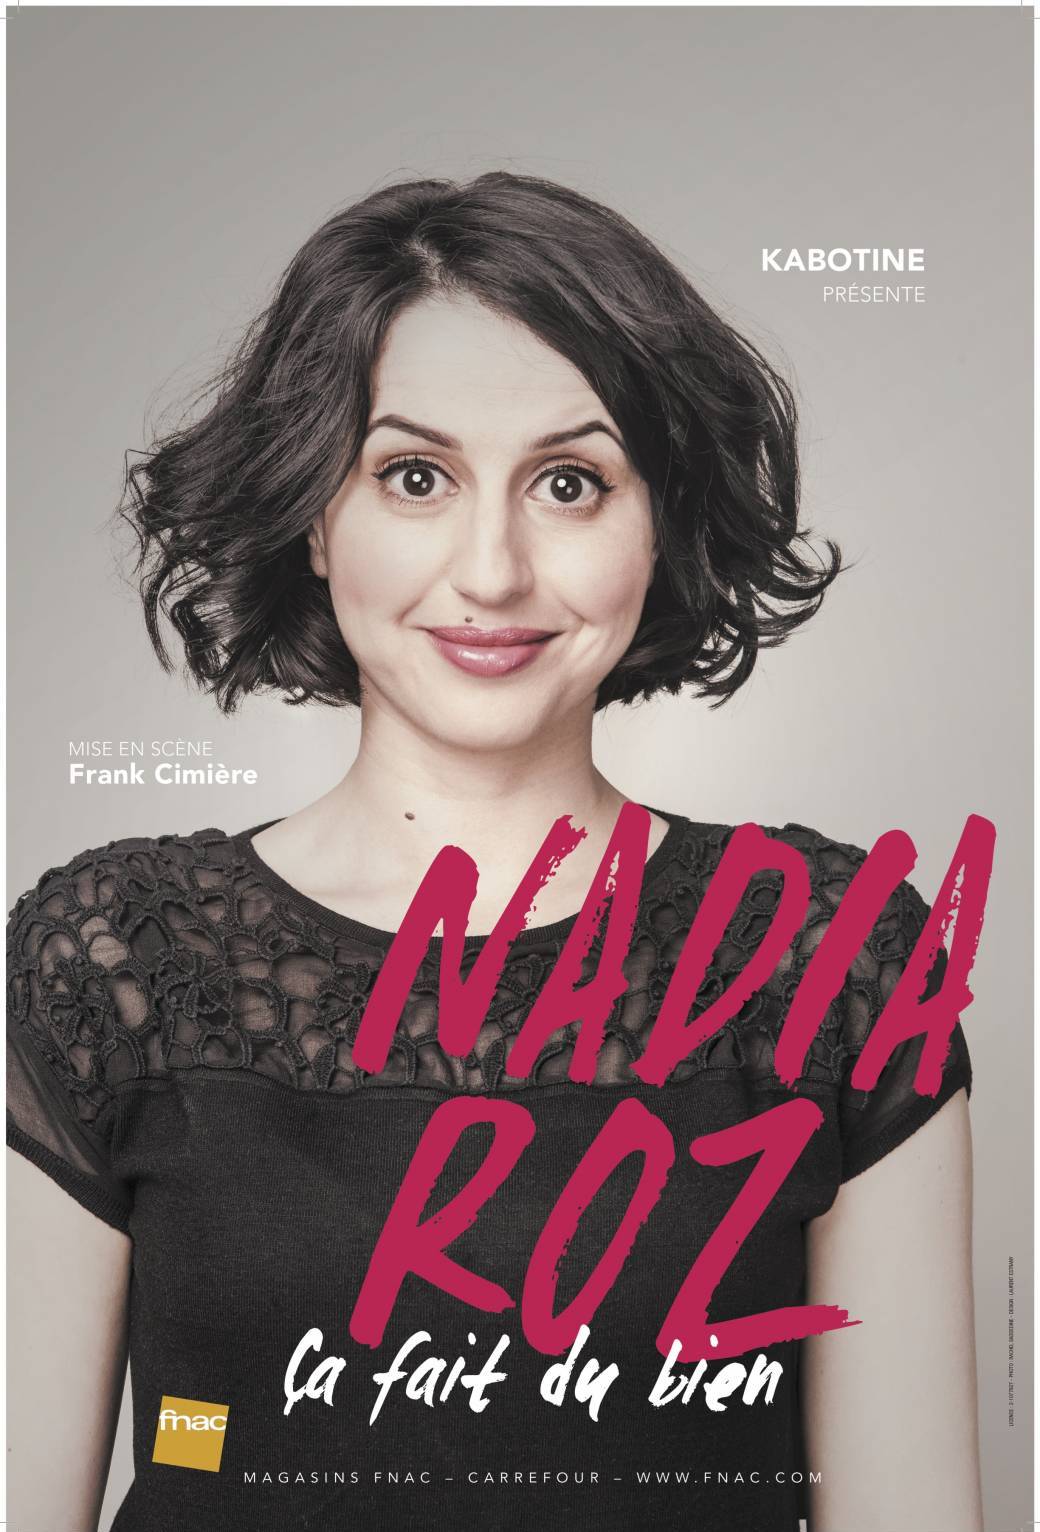 KABOTINE présente Nadia Roz "Ca fait du bien"